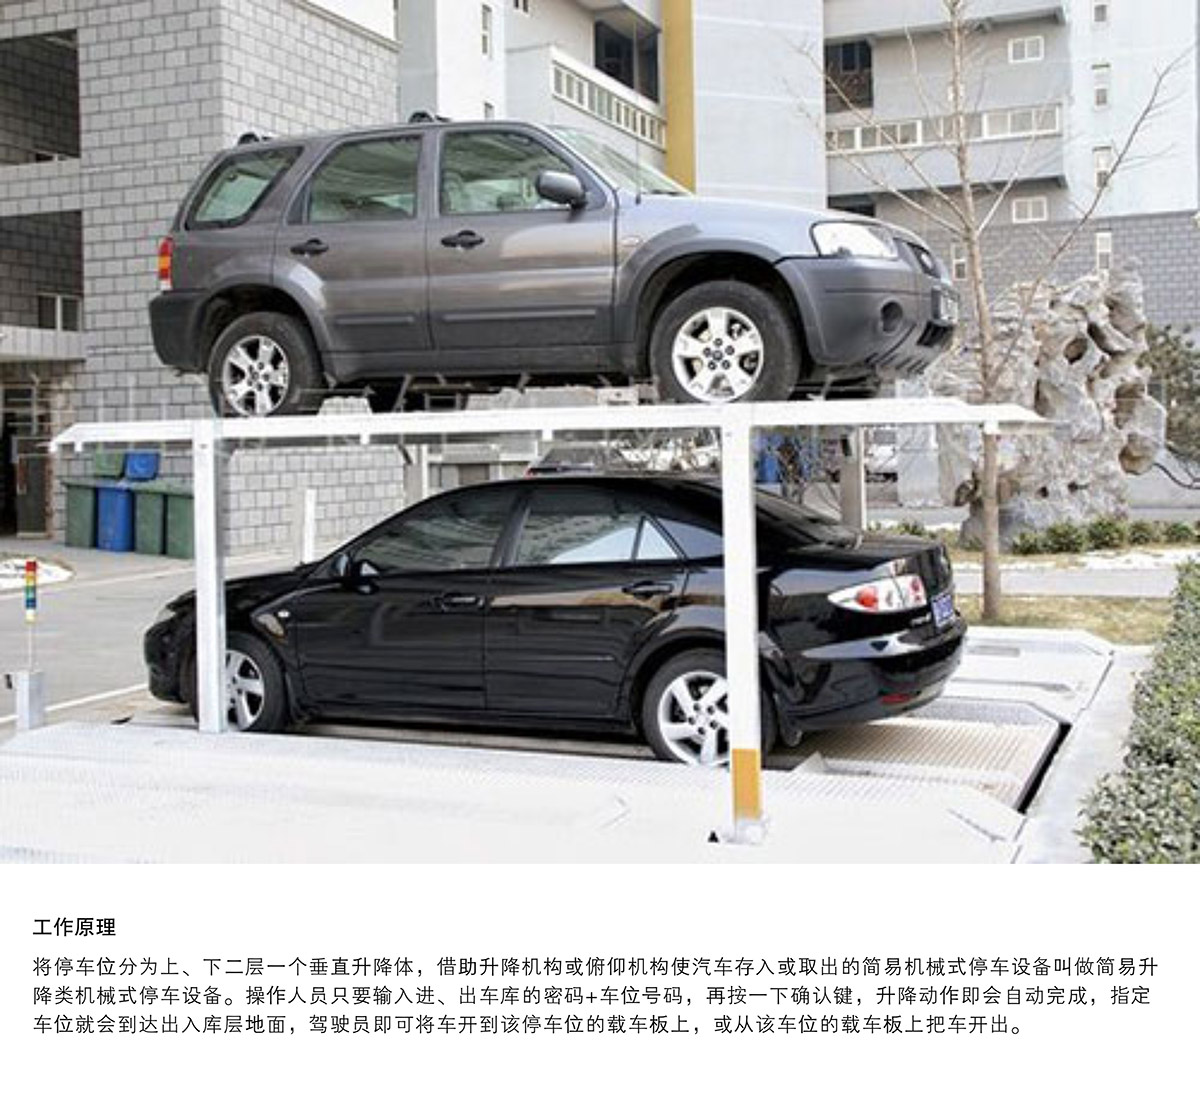 机械车位PJS2D1二层地坑简易升降停车设备工作原理.jpg